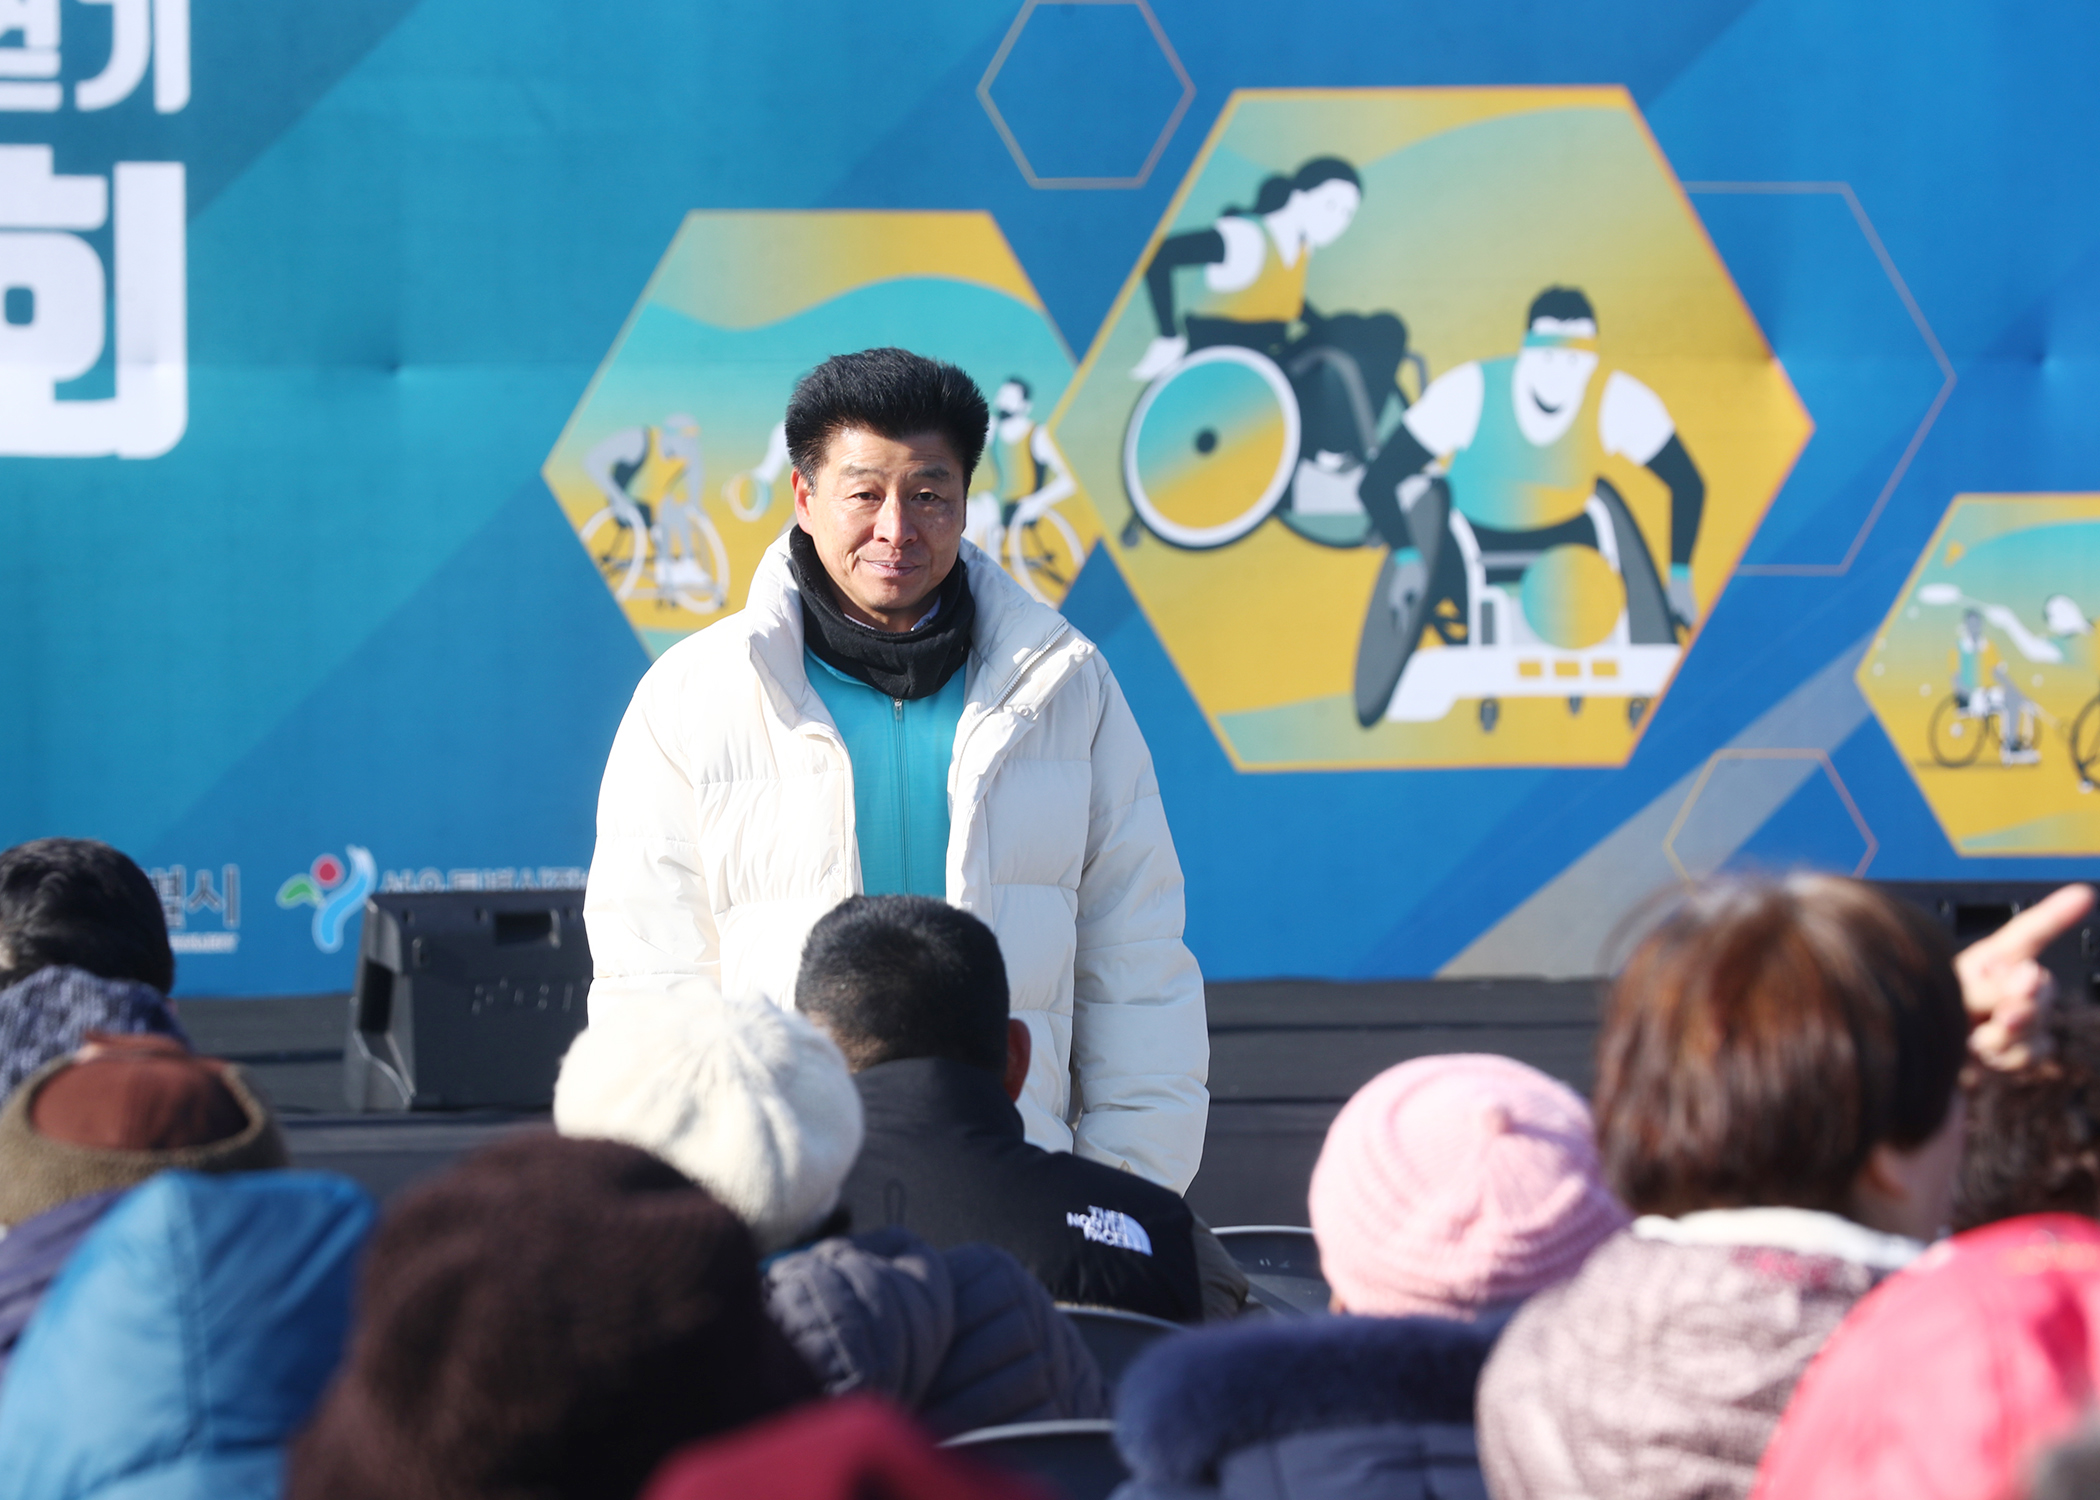 2023 송파구 세계평화의 문 걷기 및 어울림 체육대회 - 2